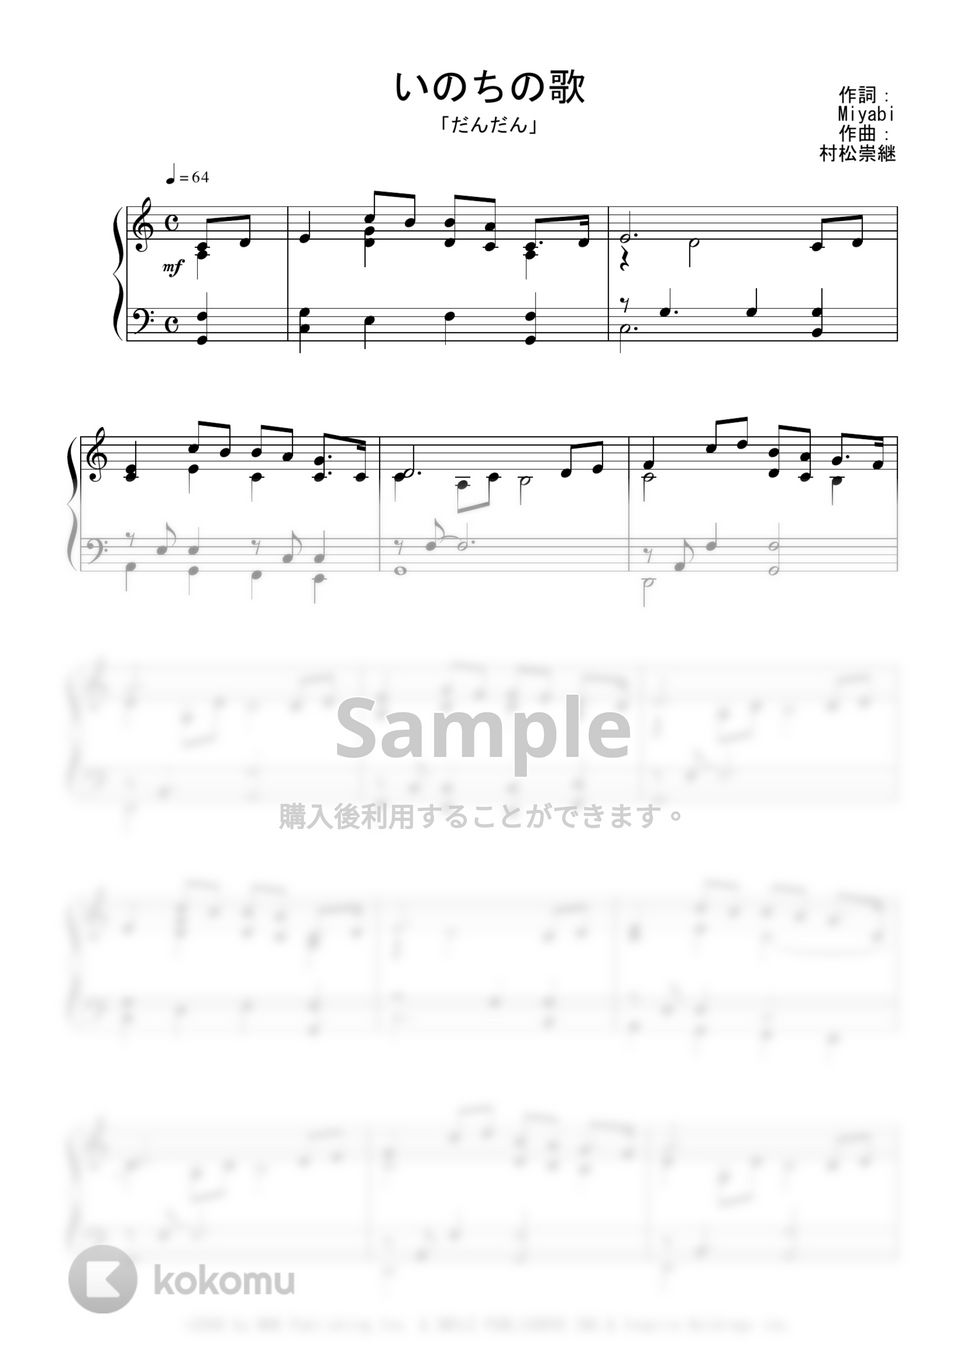 NHK朝ドラ『だんだん』OST - いのちの歌 Piano Ver. (完コピ) by Peony